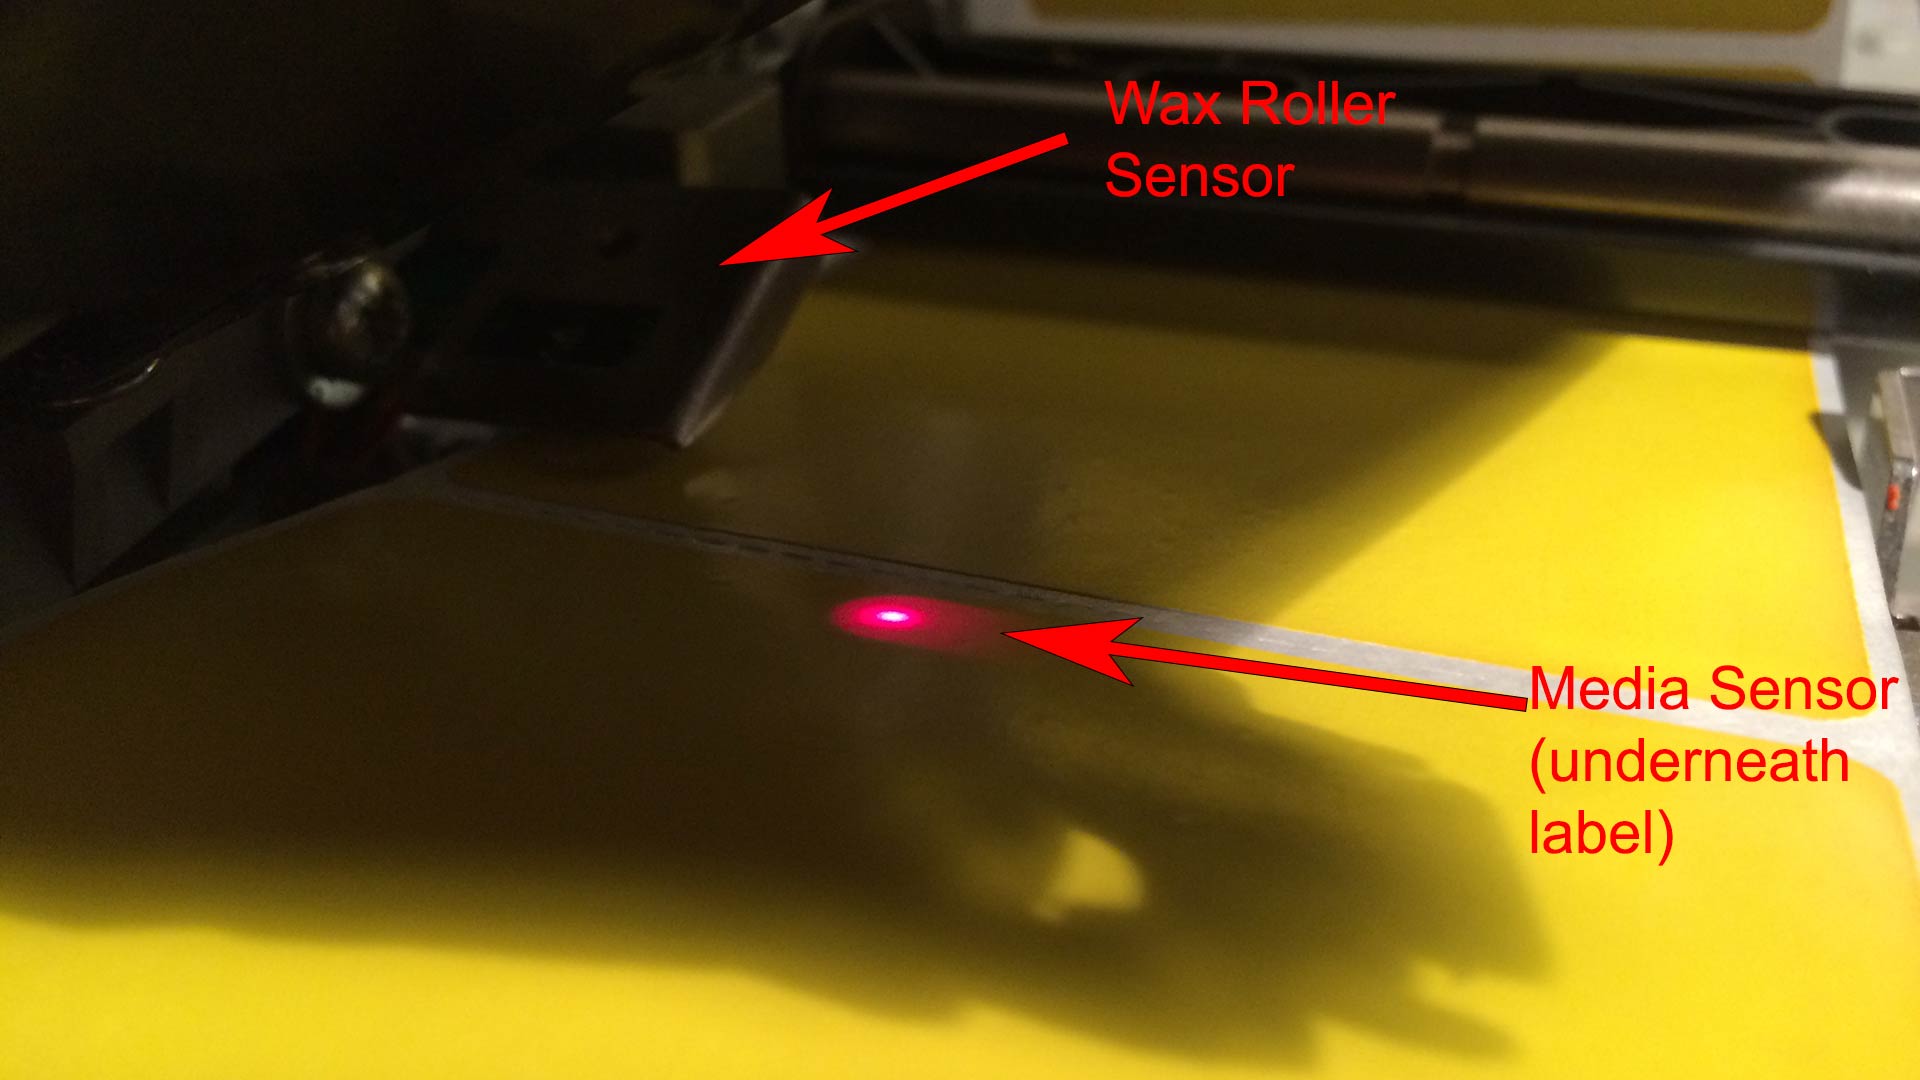 Thermal Printer Sensor Light and Wax Roller Sensor